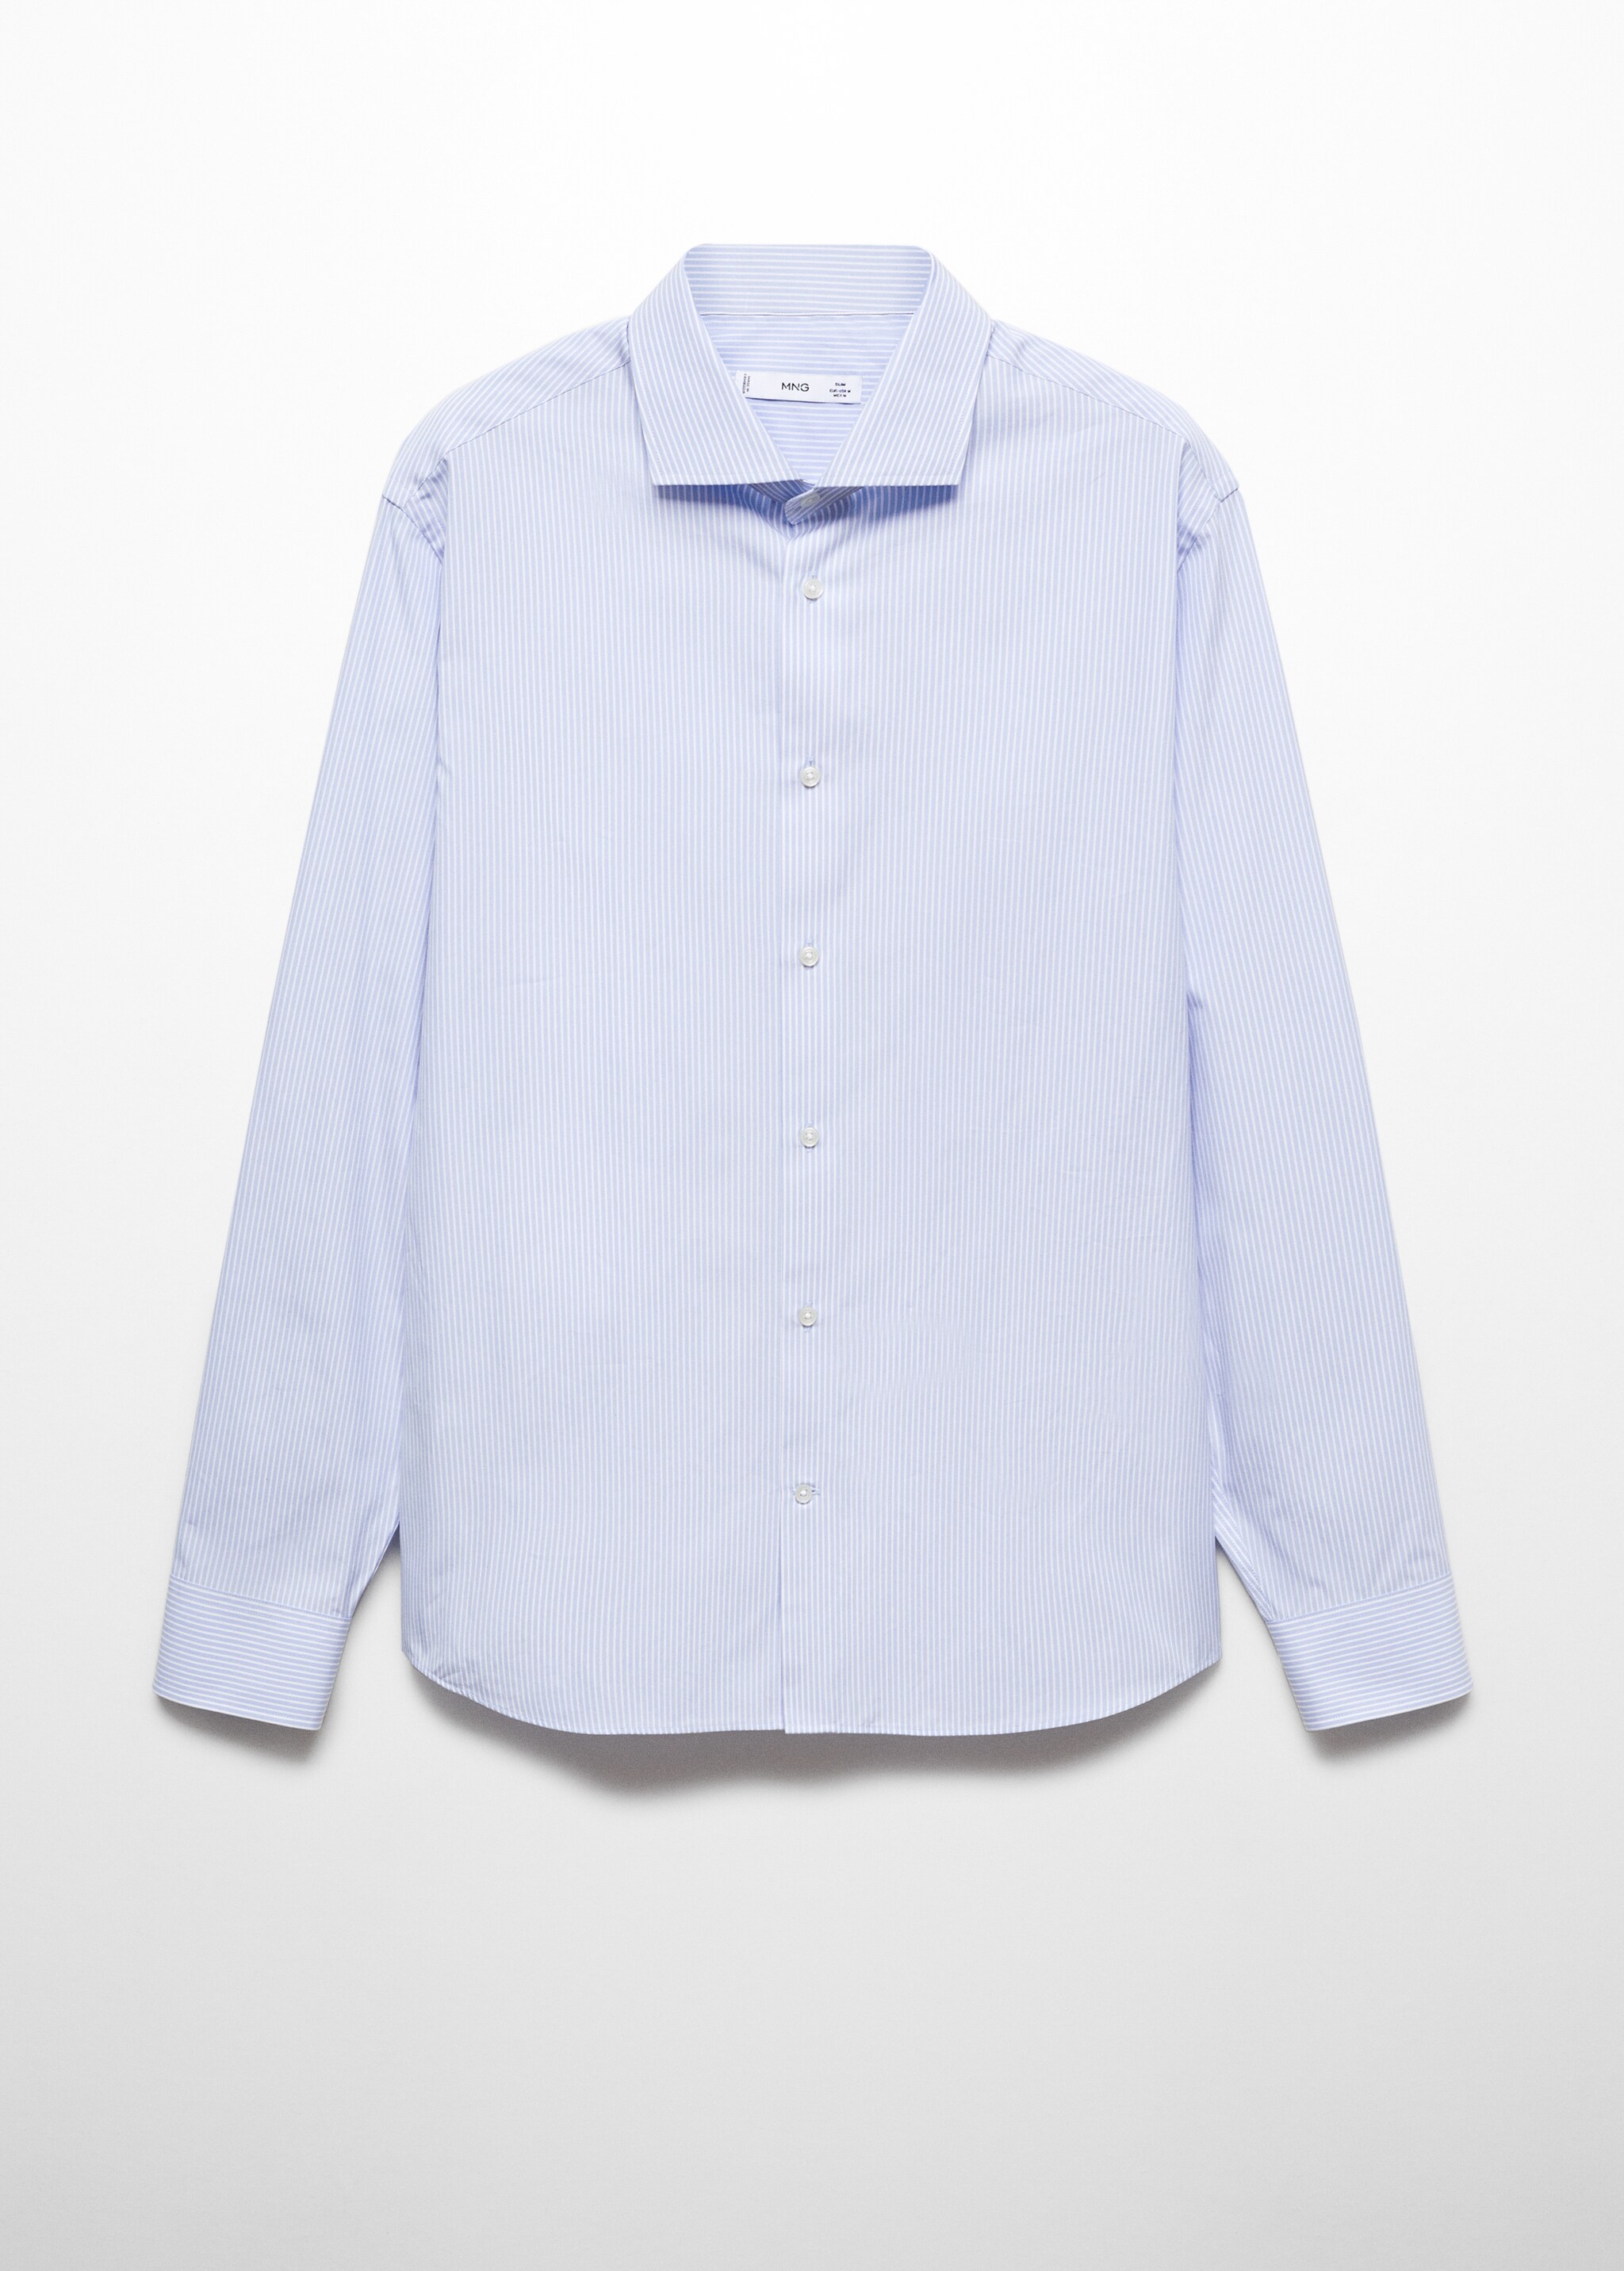 Camisa slim fit de 100% algodão - Artigo sem modelo